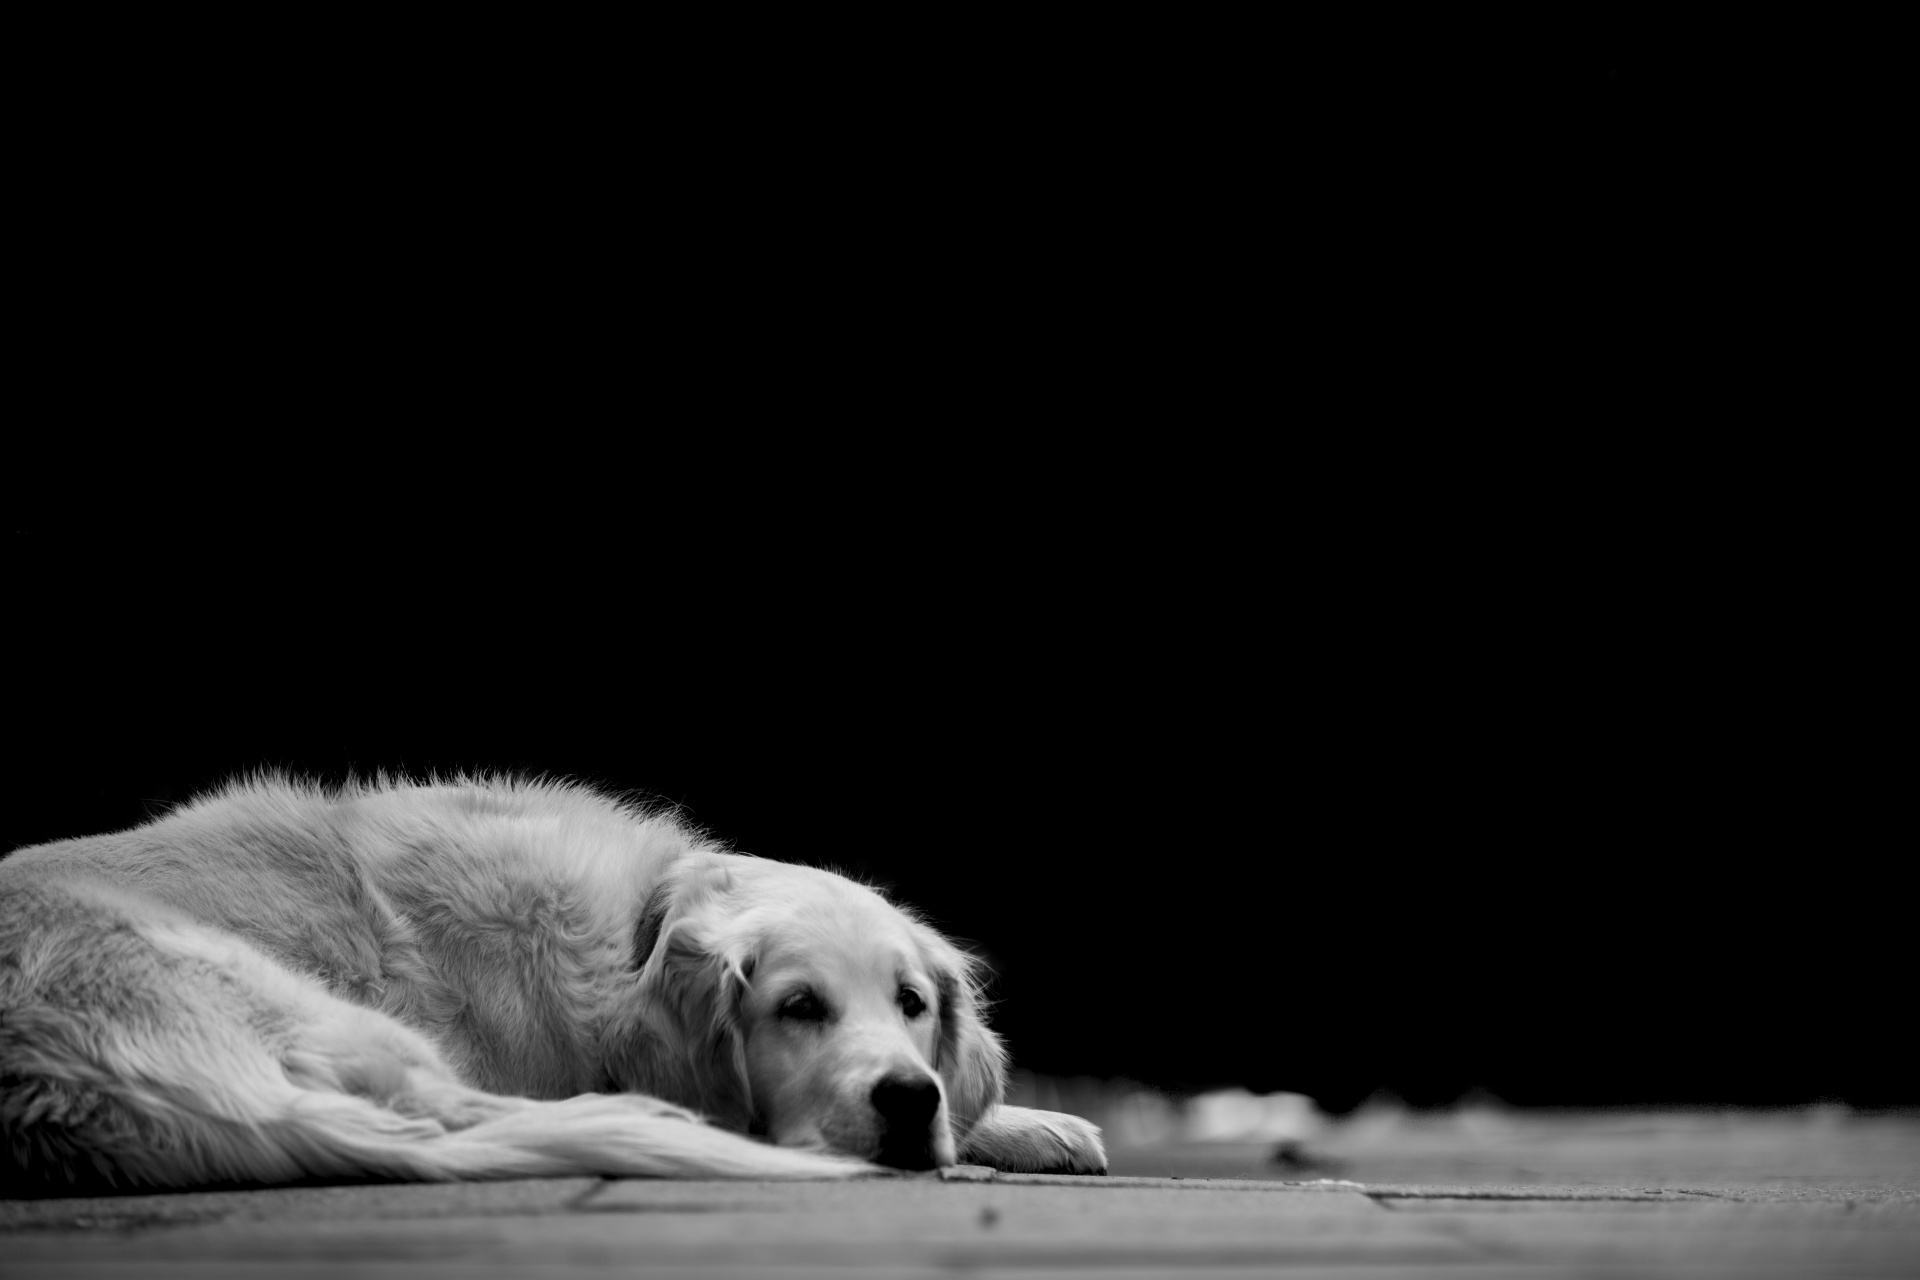 Hình ảnh một con chó buồn nằm đó trong màu đen và trắng